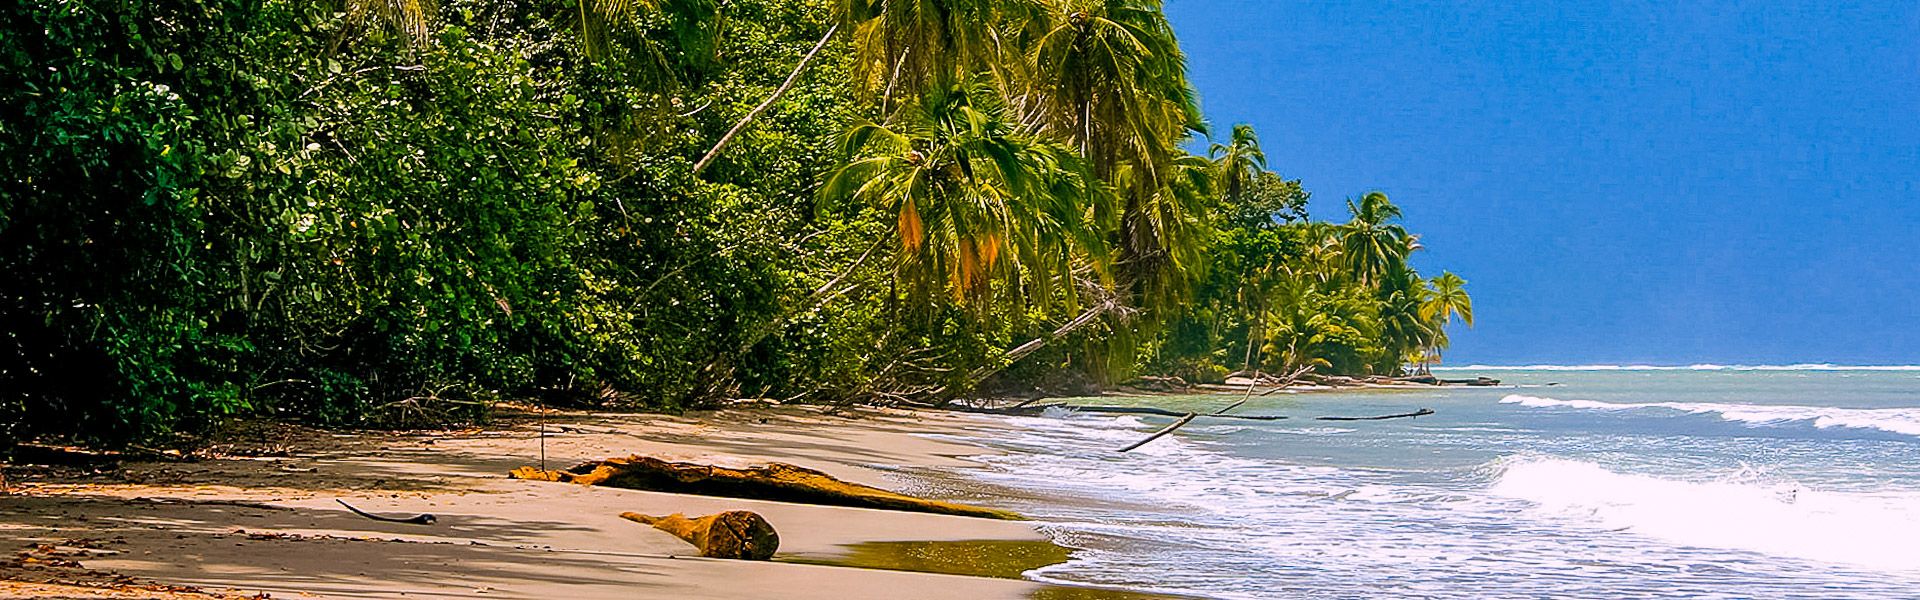 Strand an der Karibik-Kste |  Jrgen Peters / Chamleon